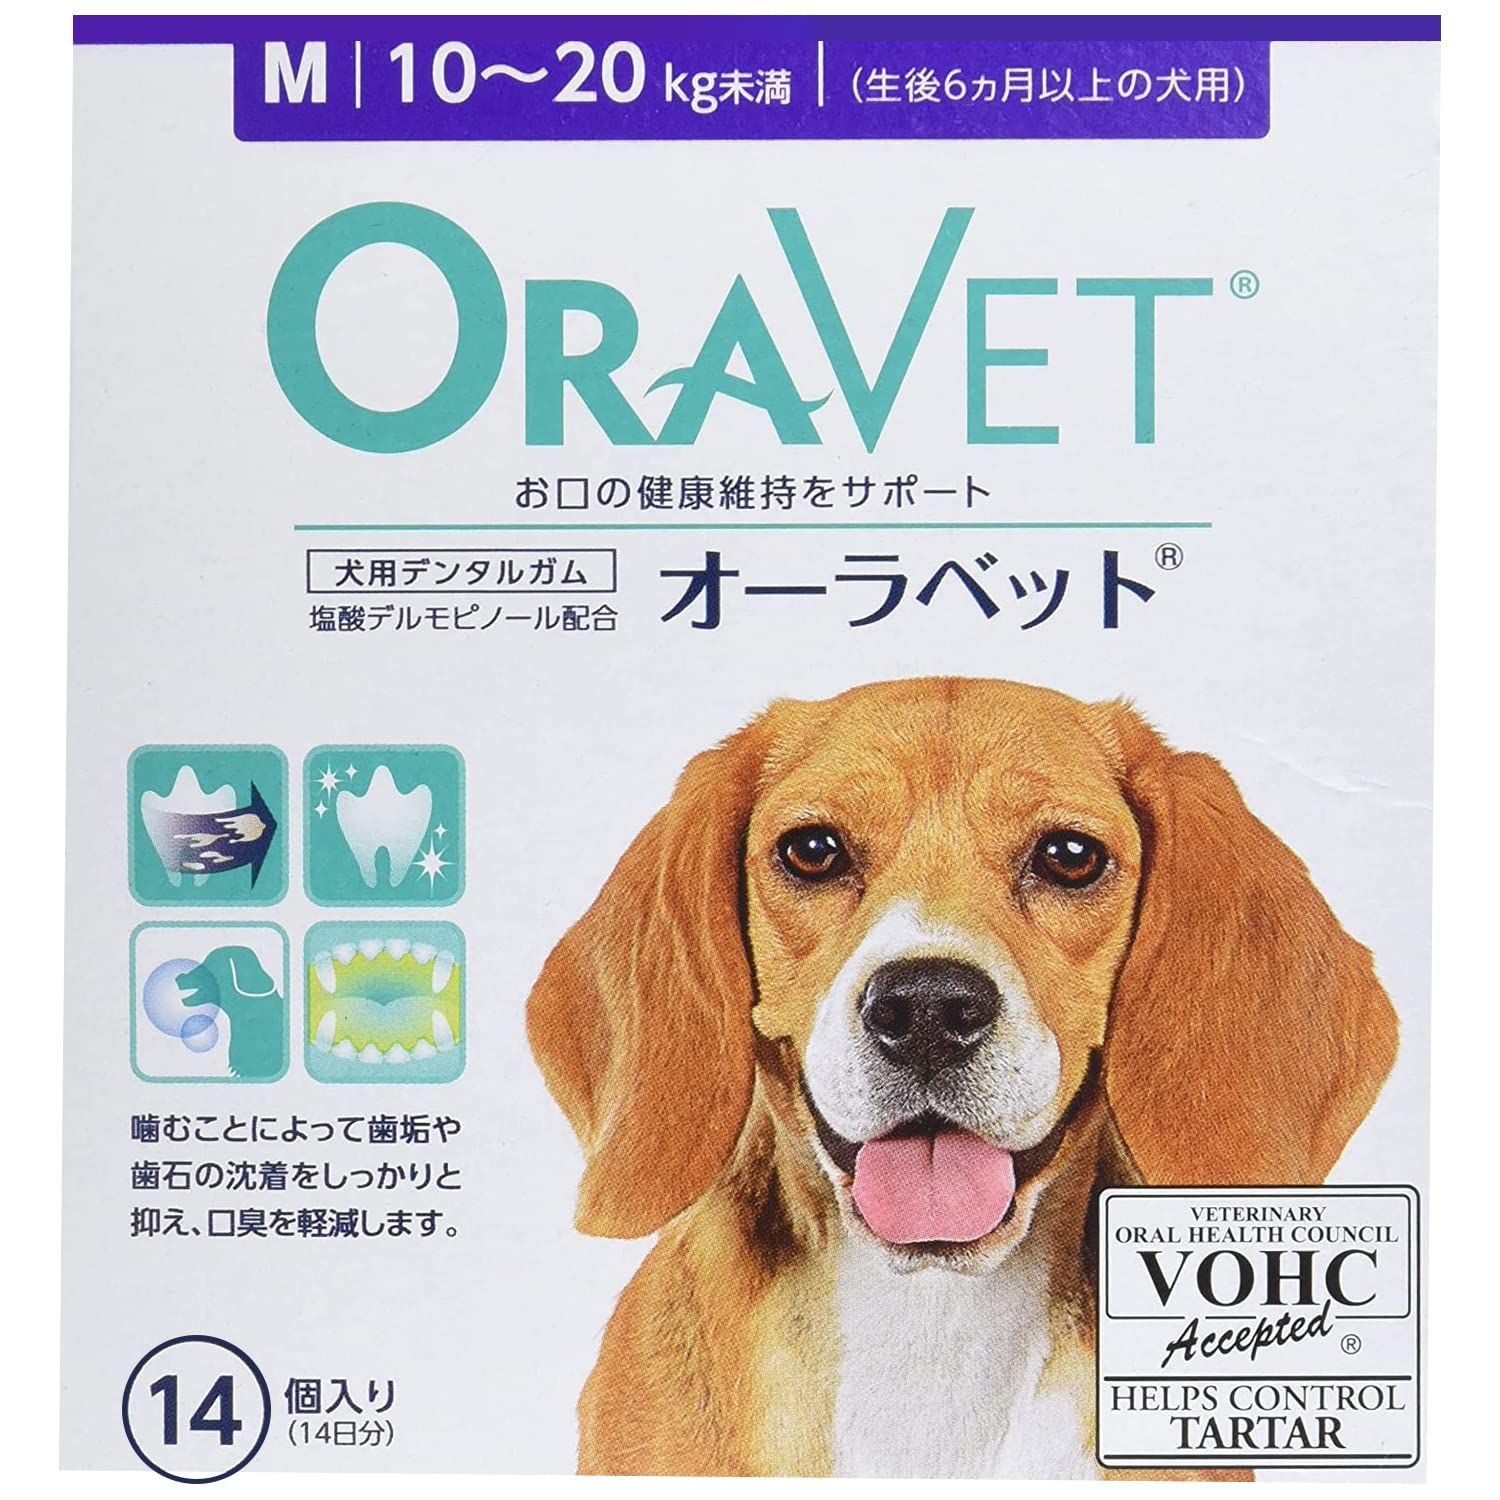 販売本物箱ごと発送　６箱セット @1800円 オーラベット XS 14個 日本全薬工業 犬